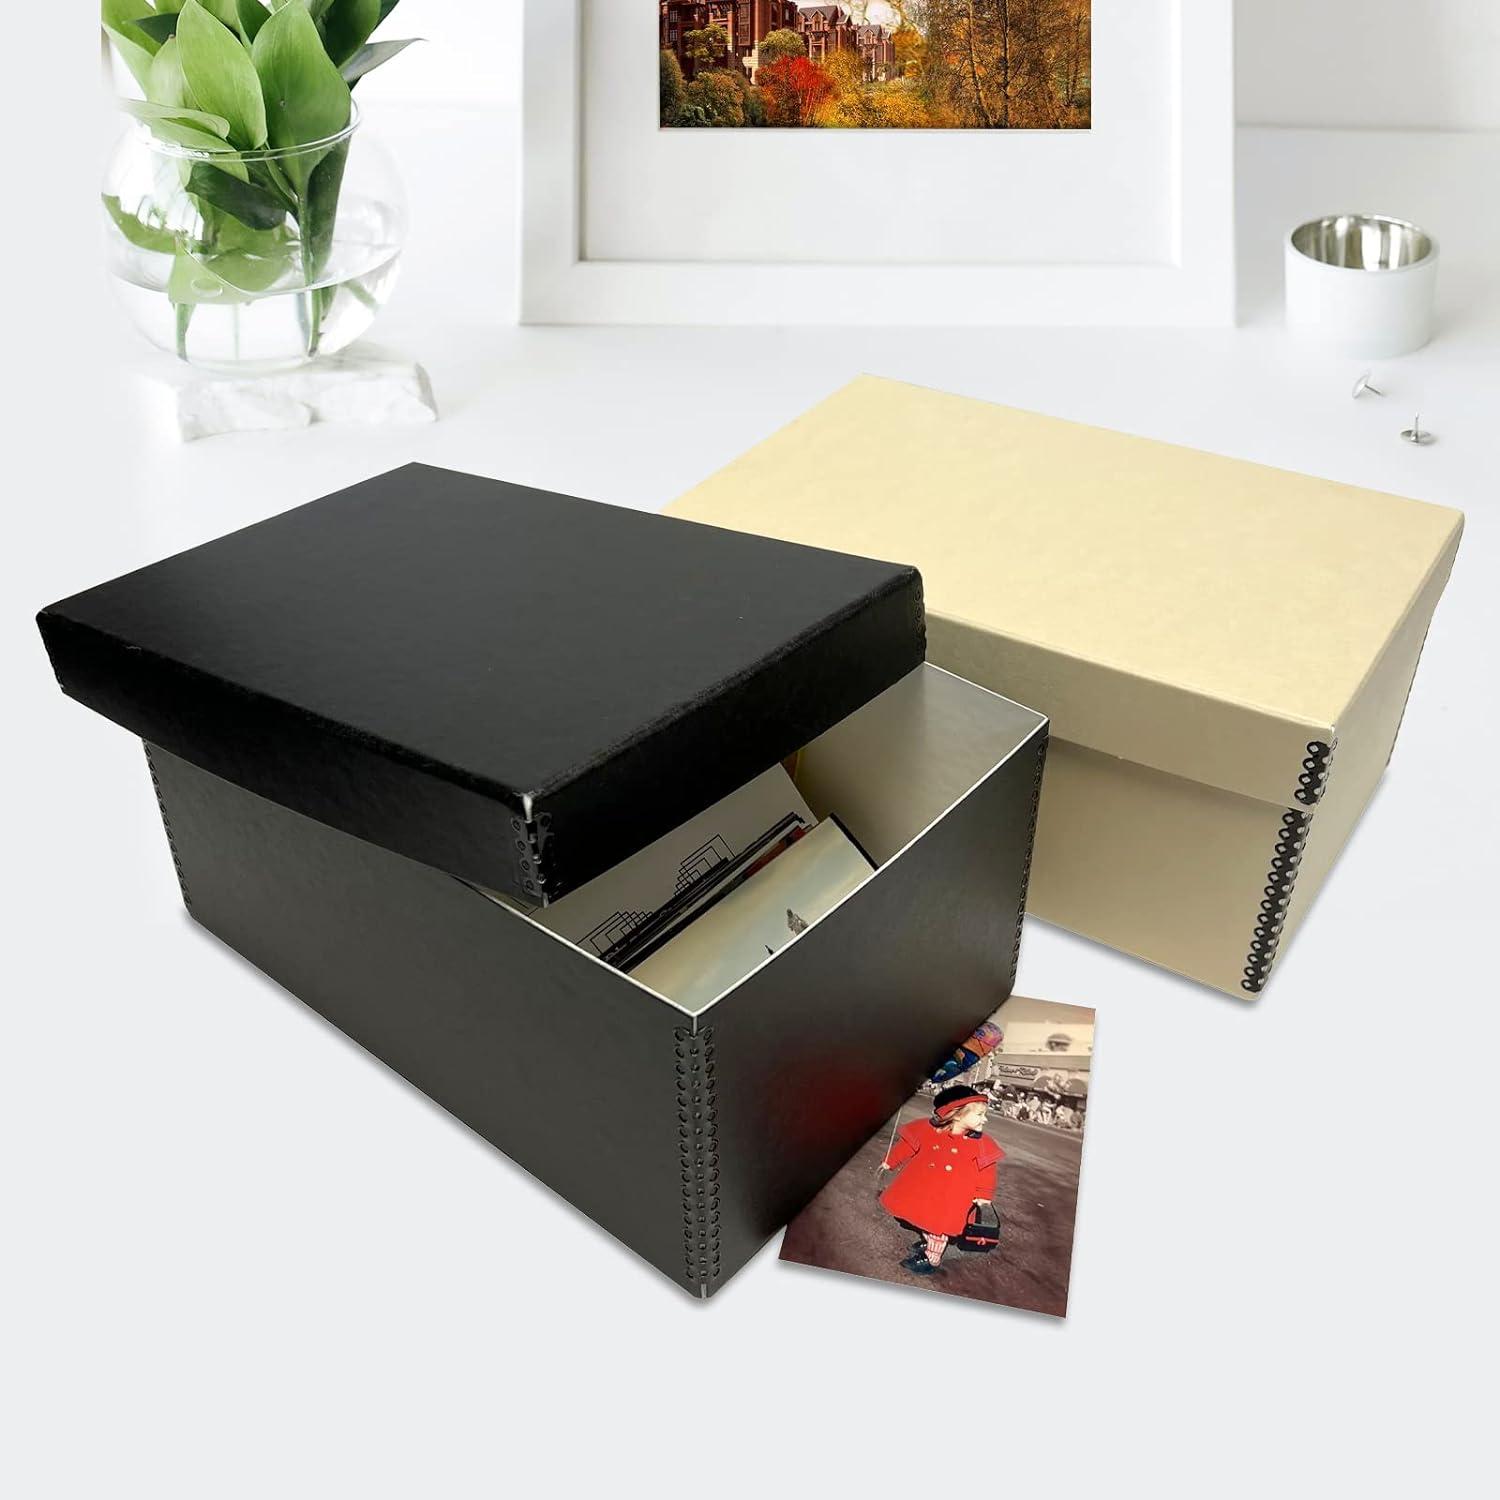 Cardboard Photo Easel 4x6 Black & White - Box of 100